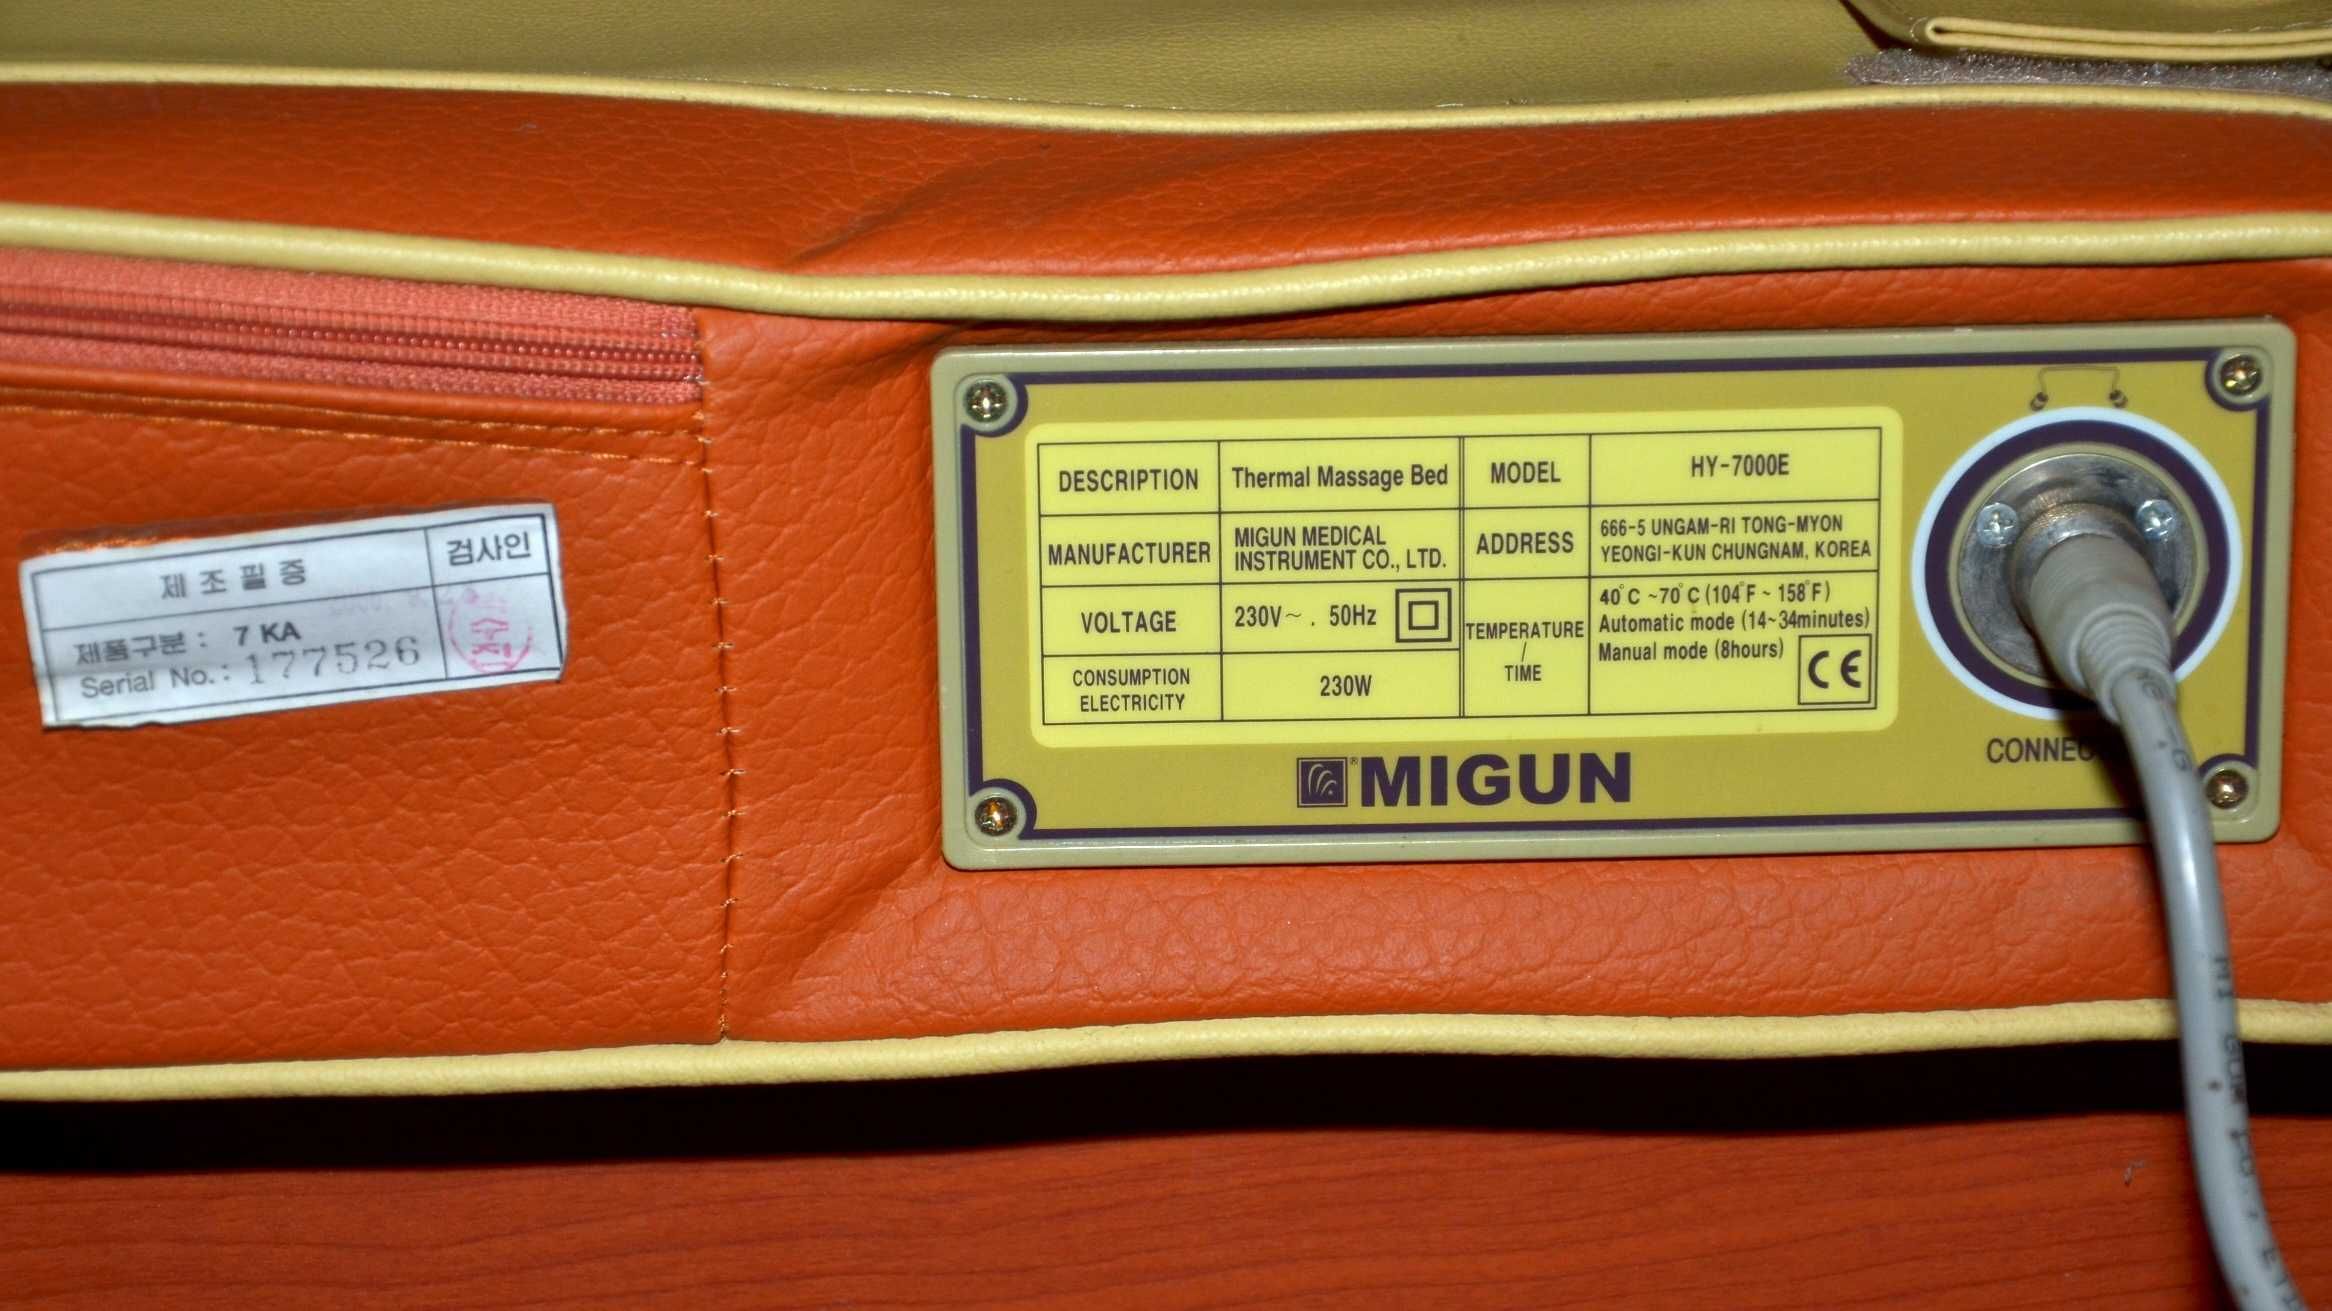 MIGUN HY-7000E - уникальная массажная кровать высшей категории